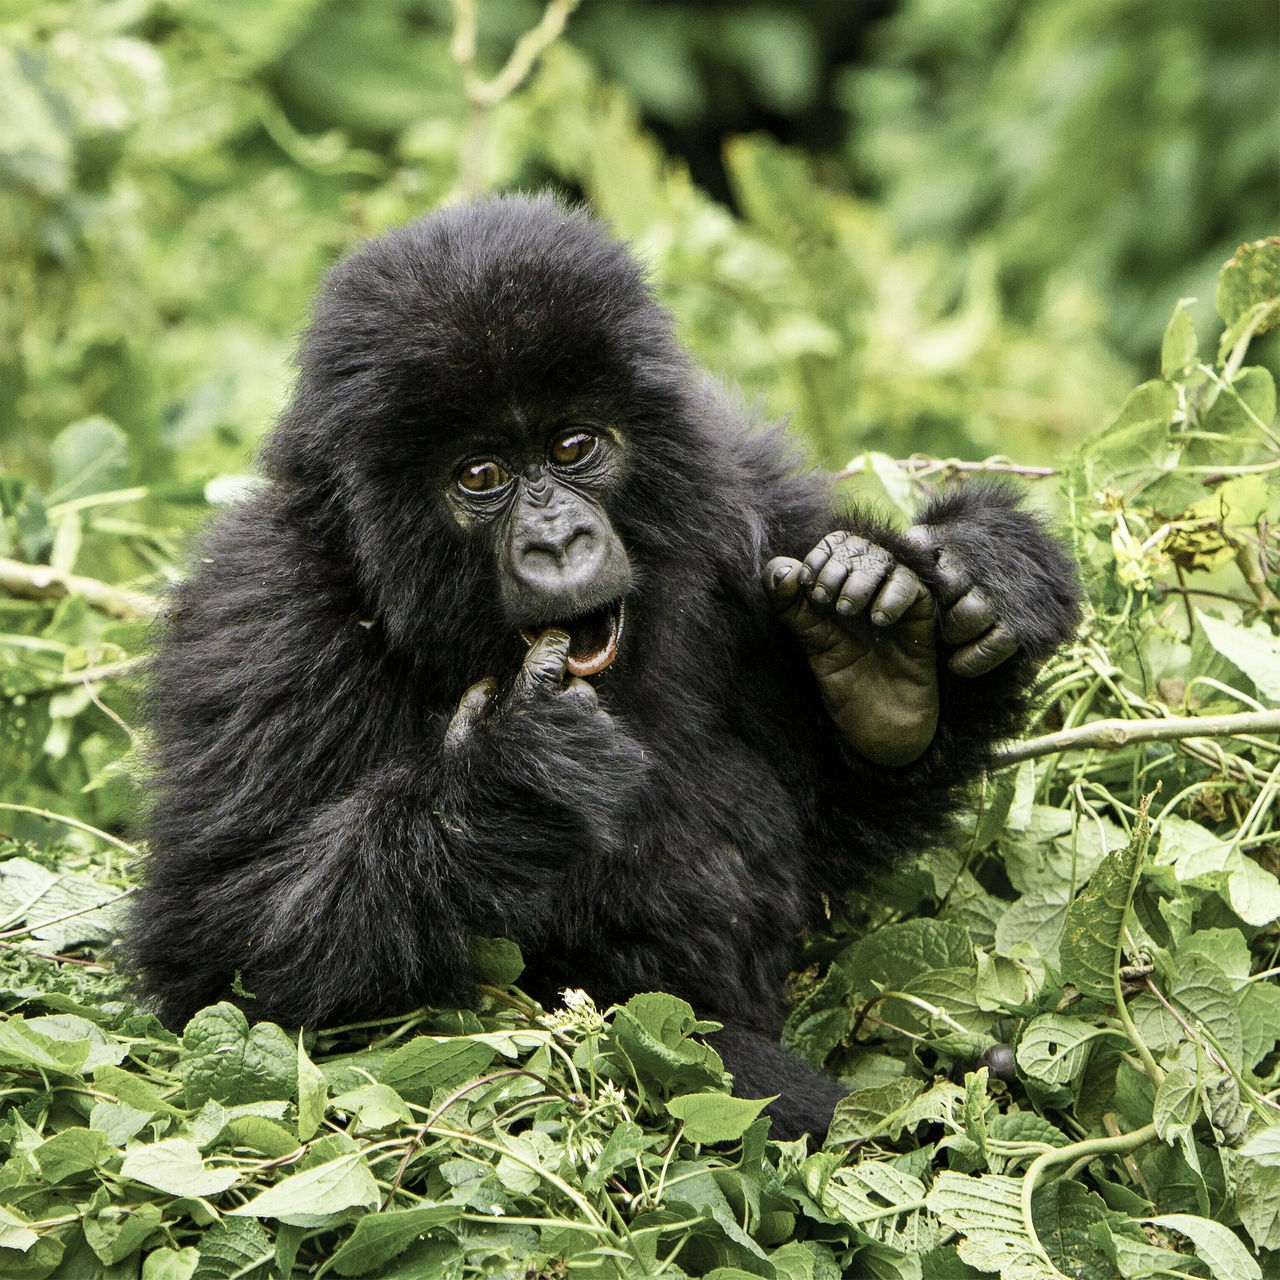 Ein junger Gorilla mit flauschigem, schwarzem Fell sitzt in einem Nest aus grünen Blättern und hält einen Finger in seinen geöffneten Mund, während er nach rechts schaut. 